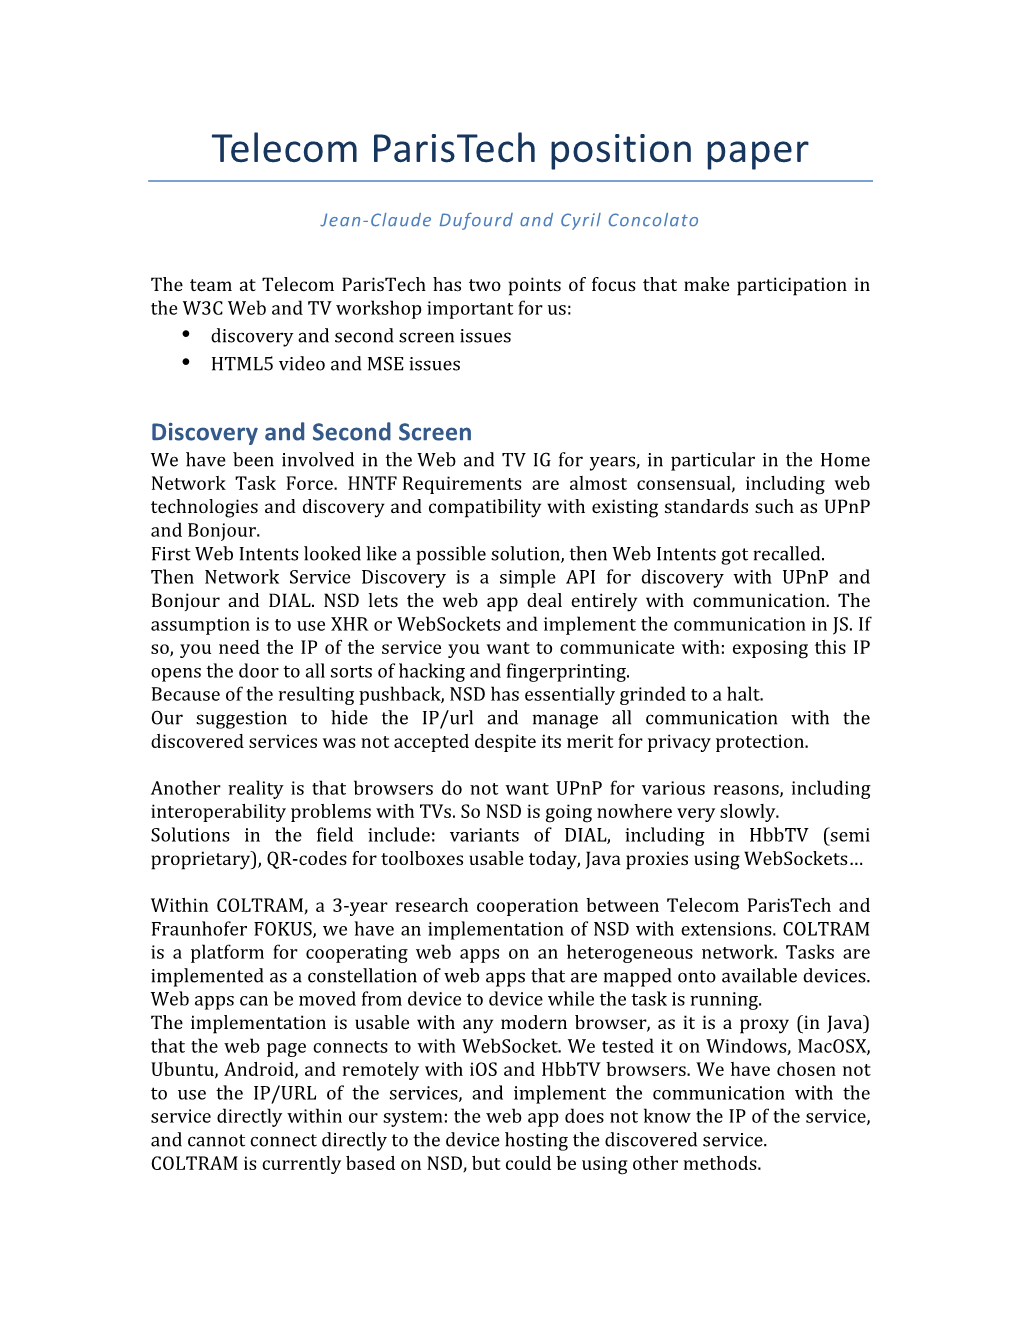 Telecom Paristech Position Paper